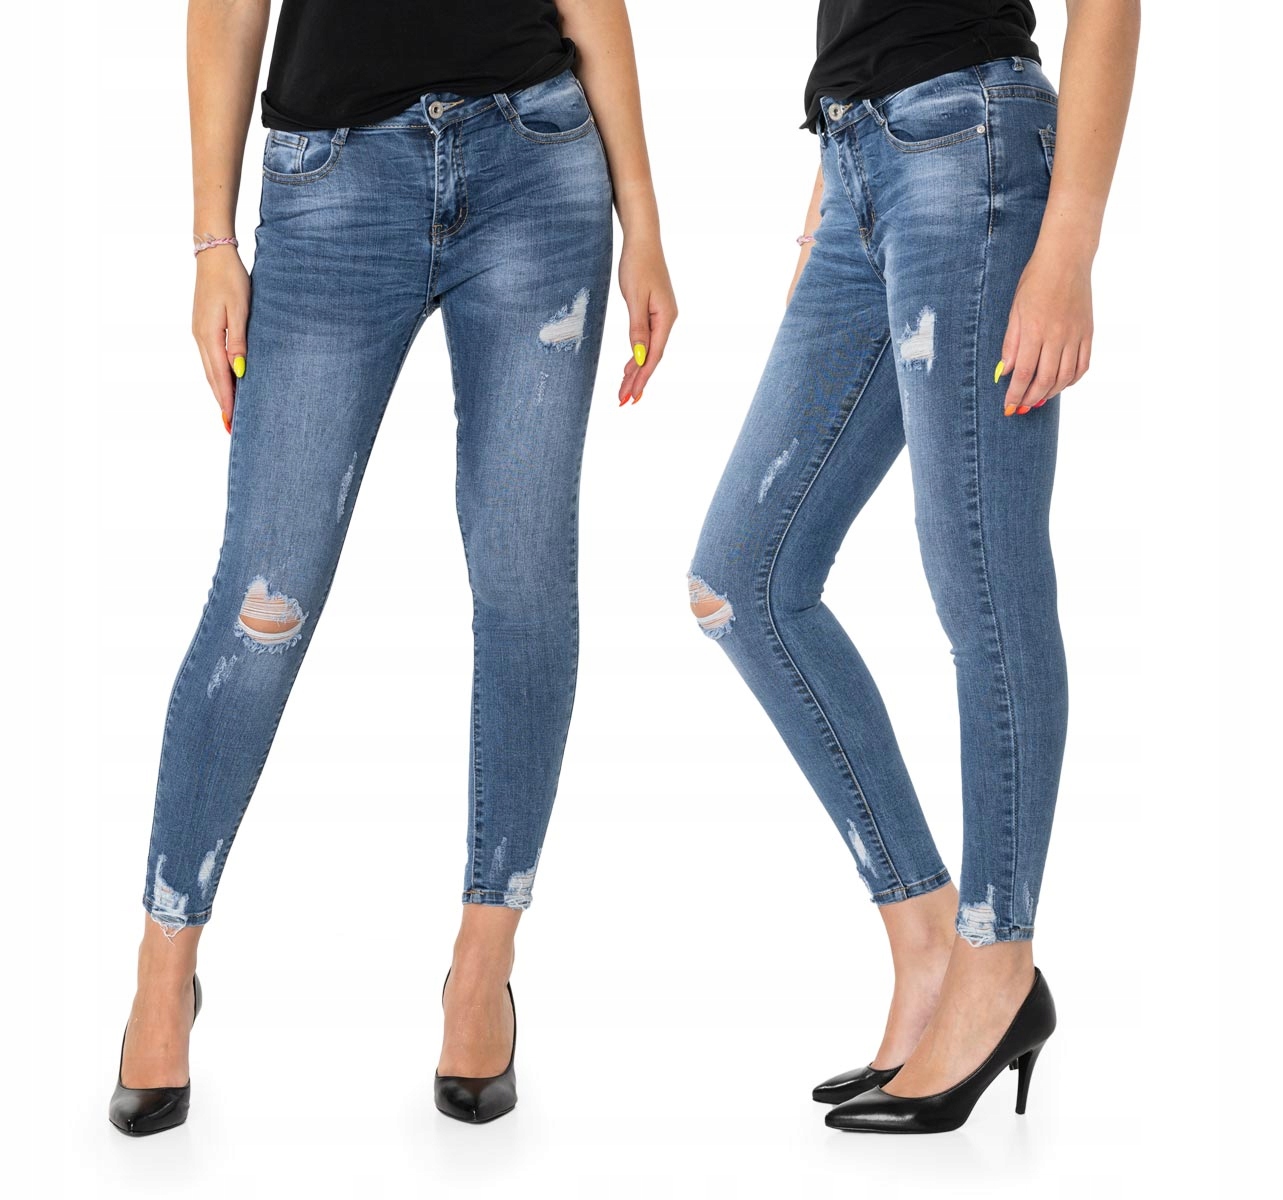 Брюки Женские джинсы с дырками S5586 r 31